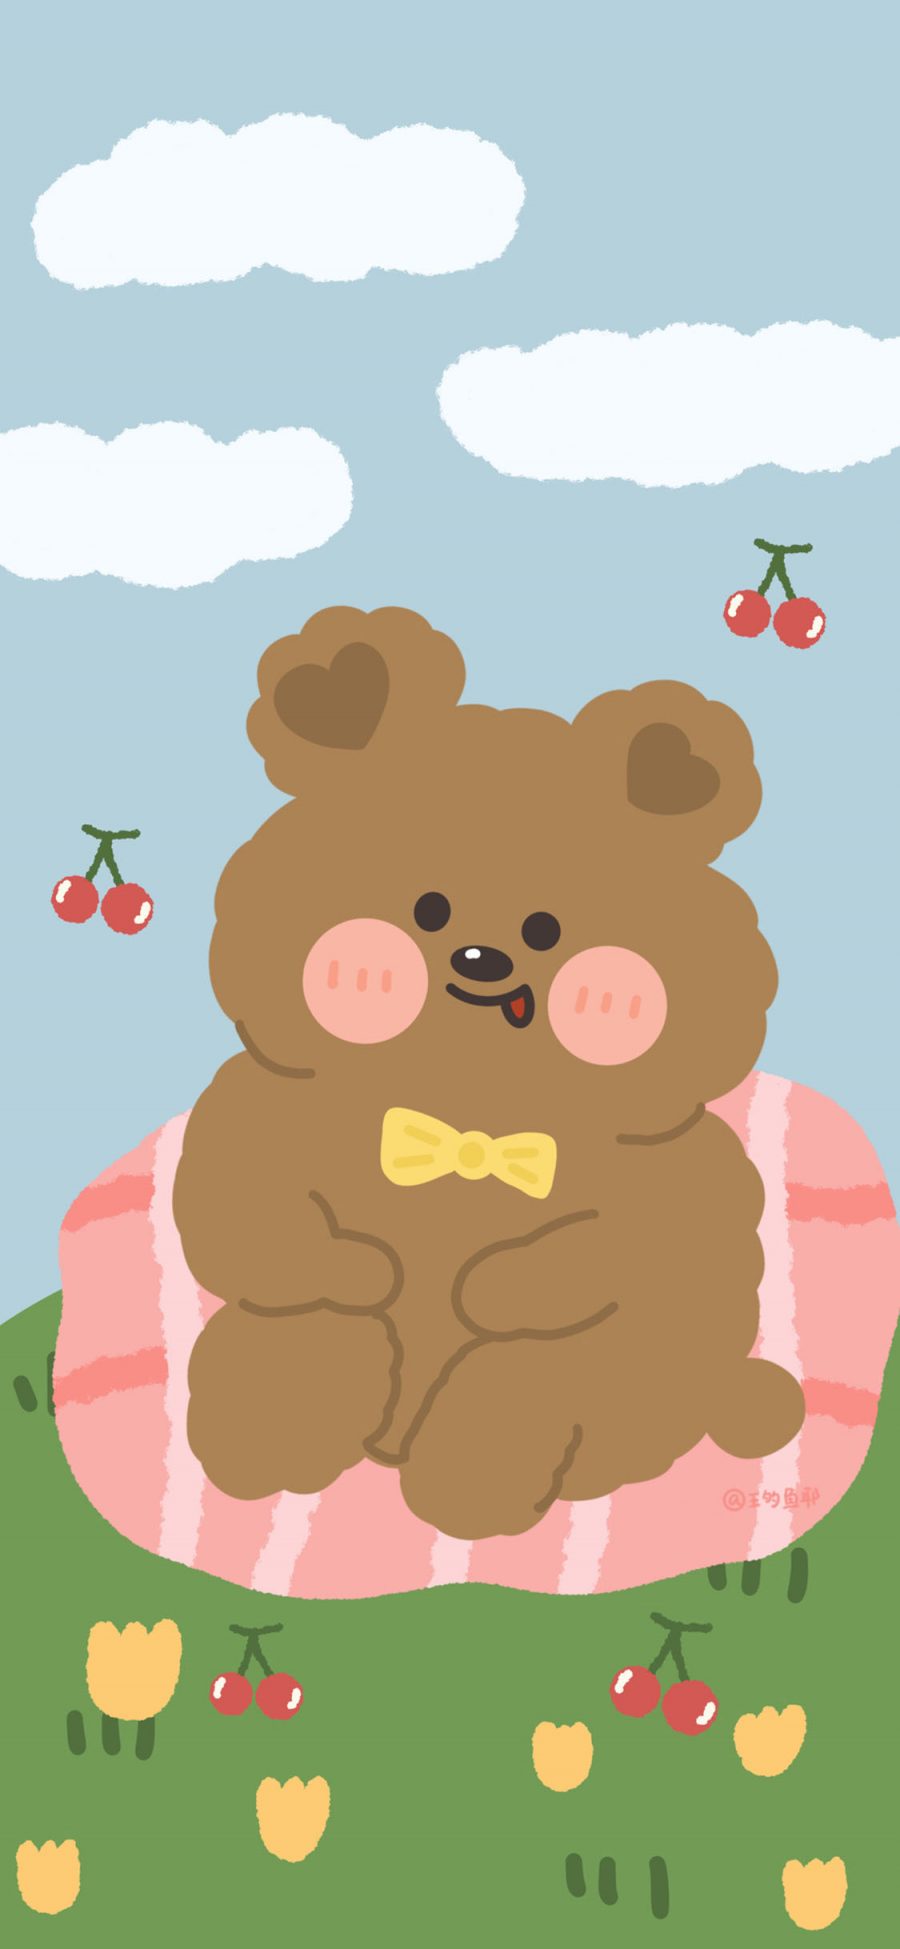 [2436×1125]可爱 卡通 小熊 蝴蝶结 苹果手机动漫壁纸图片